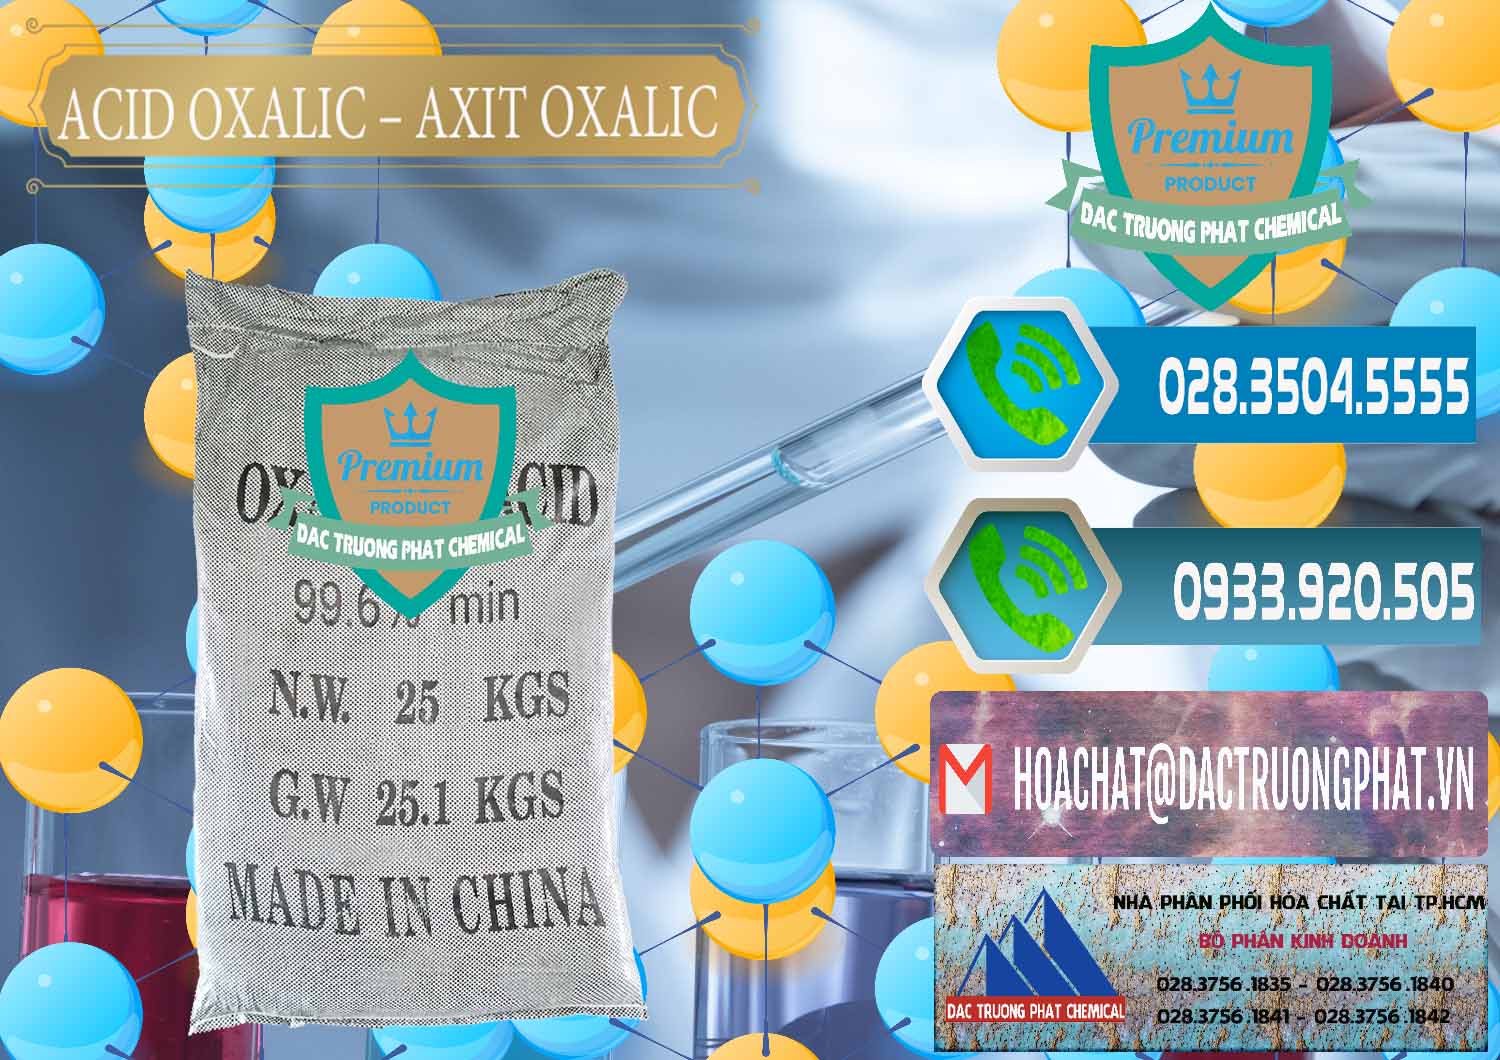 Công ty chuyên bán - cung ứng Acid Oxalic – Axit Oxalic 99.6% Trung Quốc China - 0014 - Nhà cung cấp & bán hóa chất tại TP.HCM - congtyhoachat.net